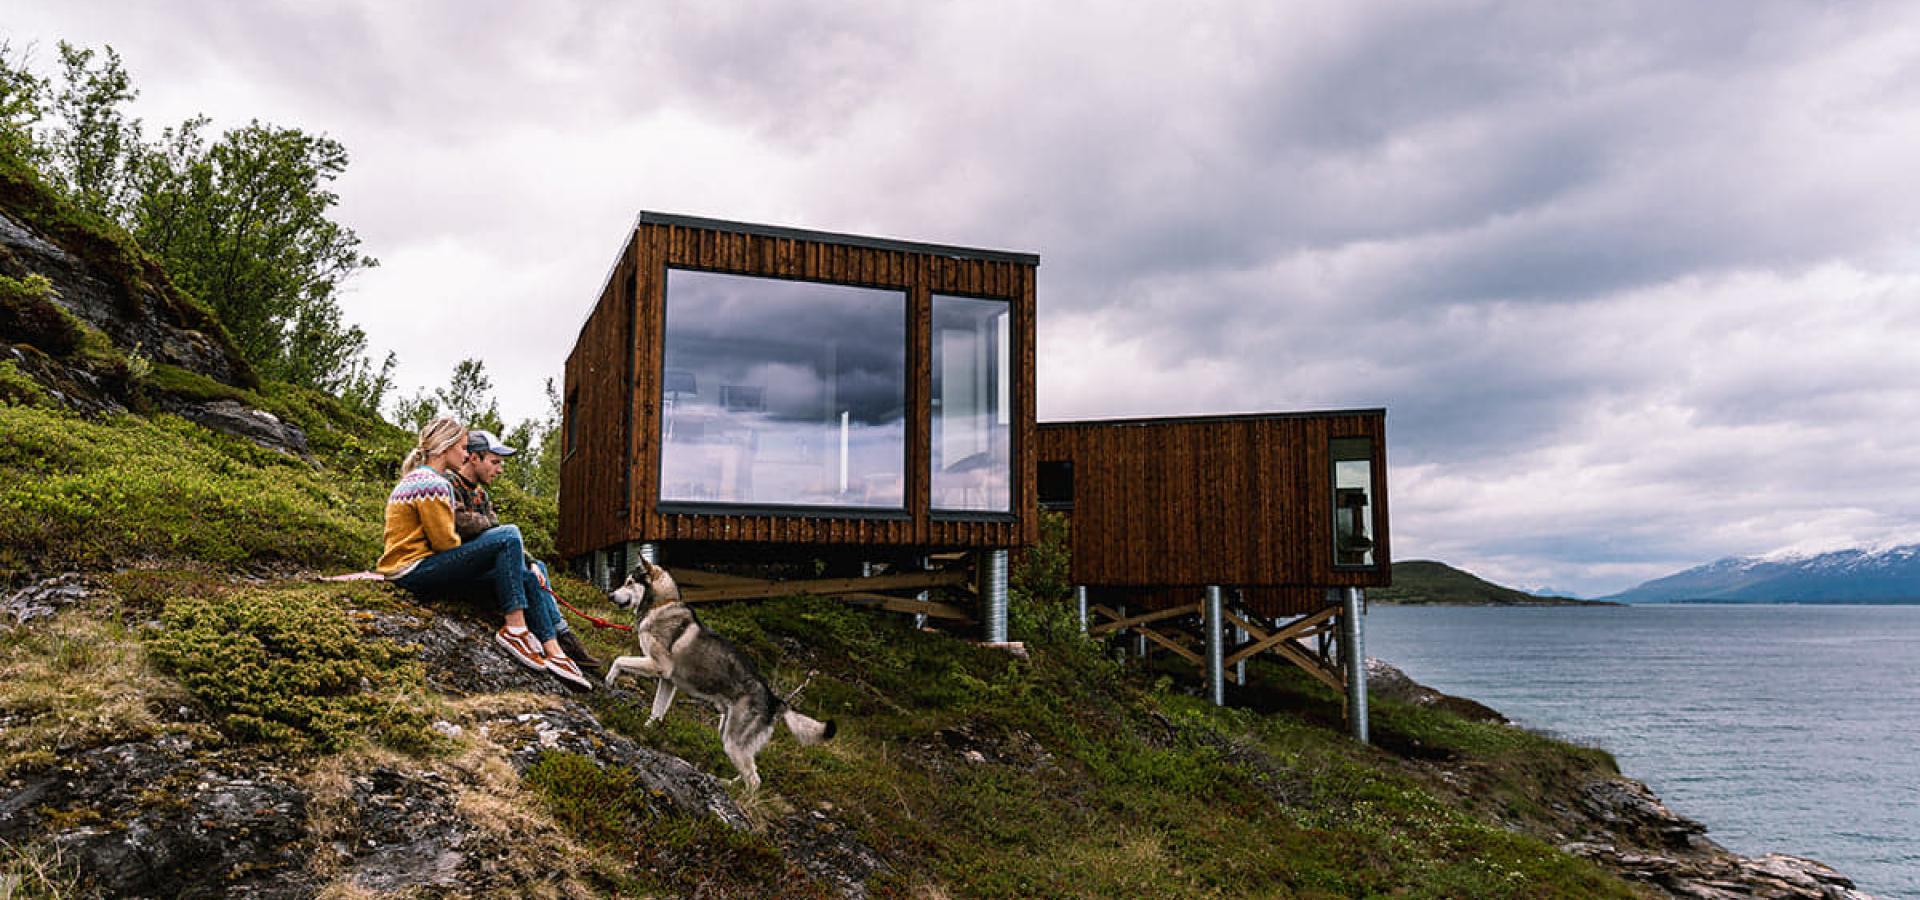 Nyter utsikten sammen ved Aurora Fjord Cabins i Lyngen, Nord Norge